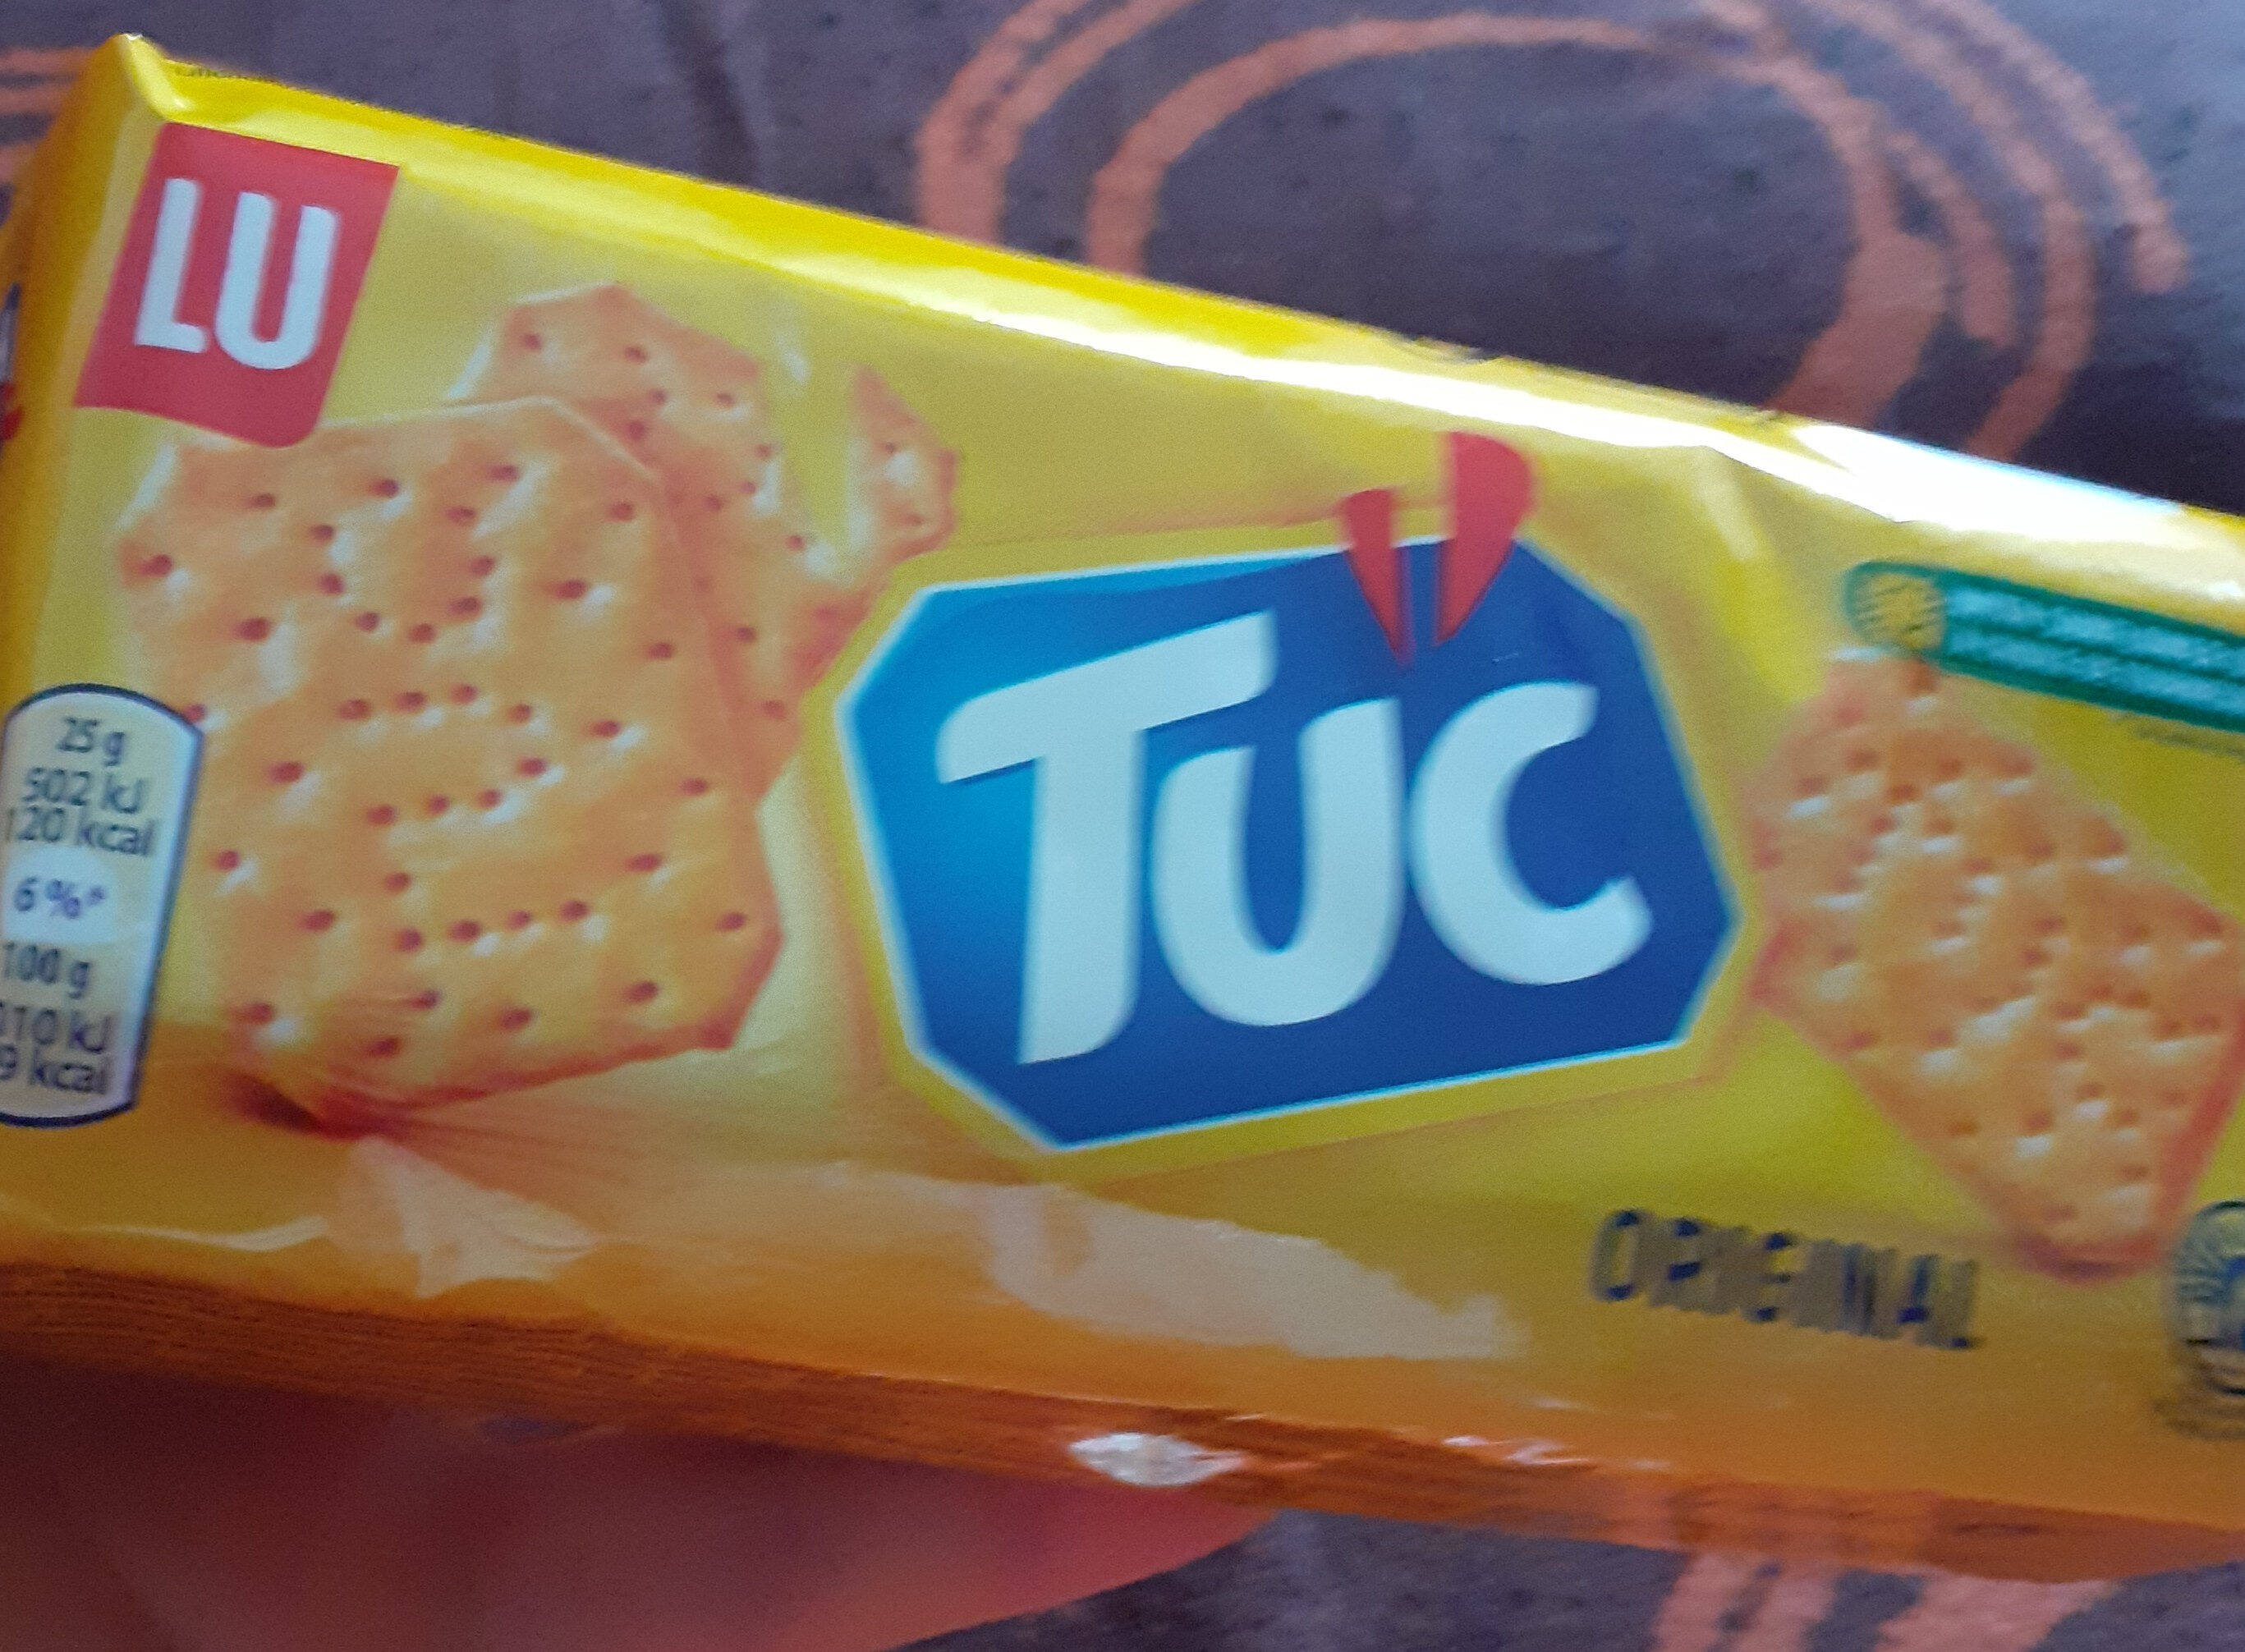 Snacks, TUC Original - Prodotto - en